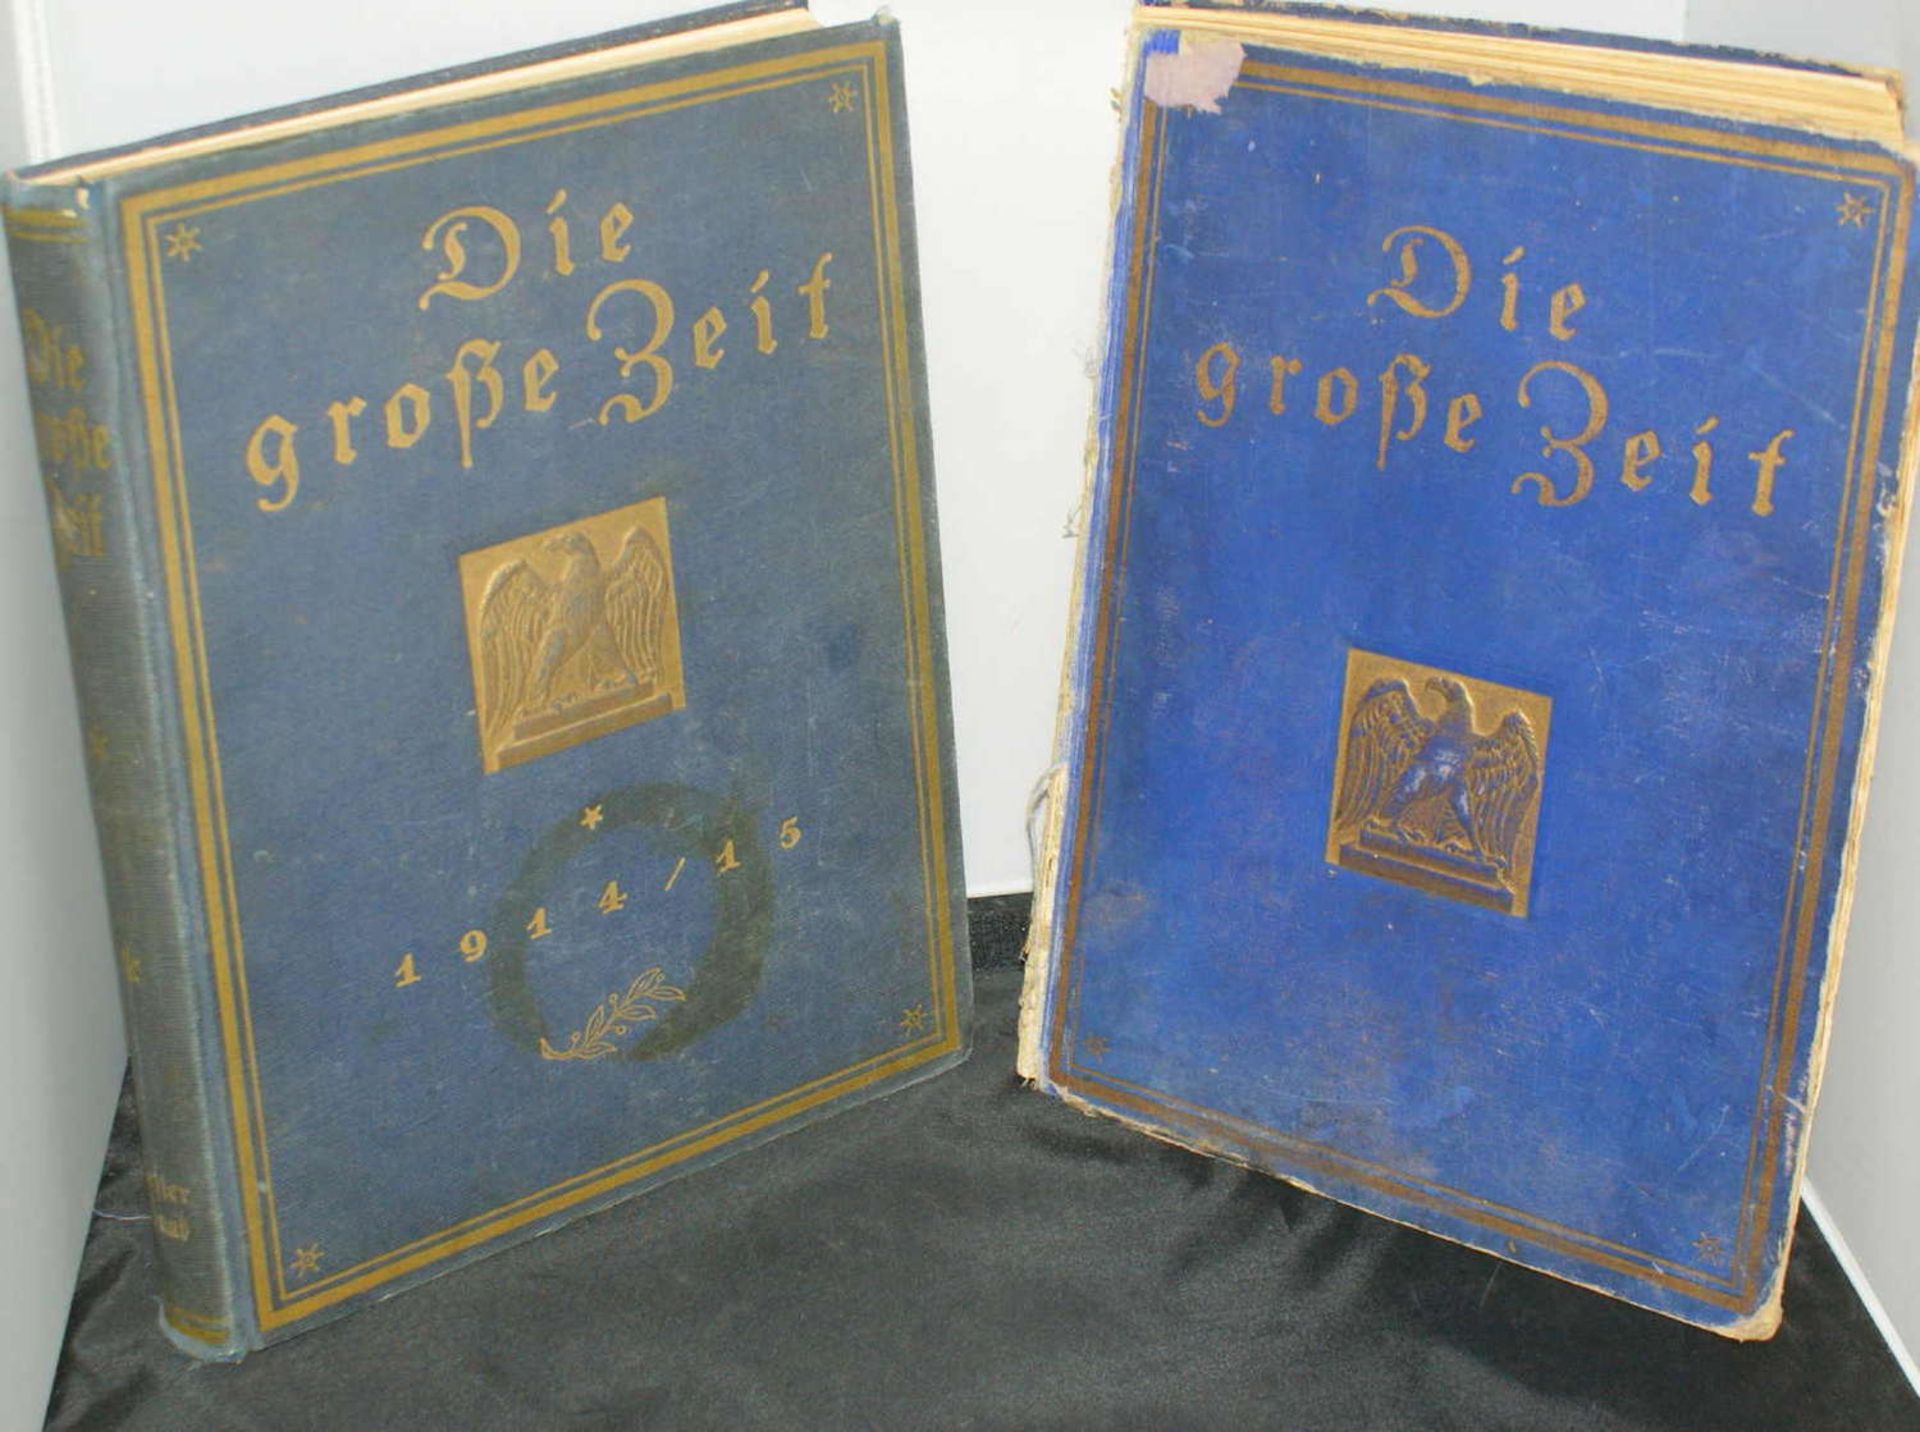 2 Bücher "Die große Zeit", Band 1 und 2. Gebrauchter Zustand2 books "The Great Time", Volumes 1